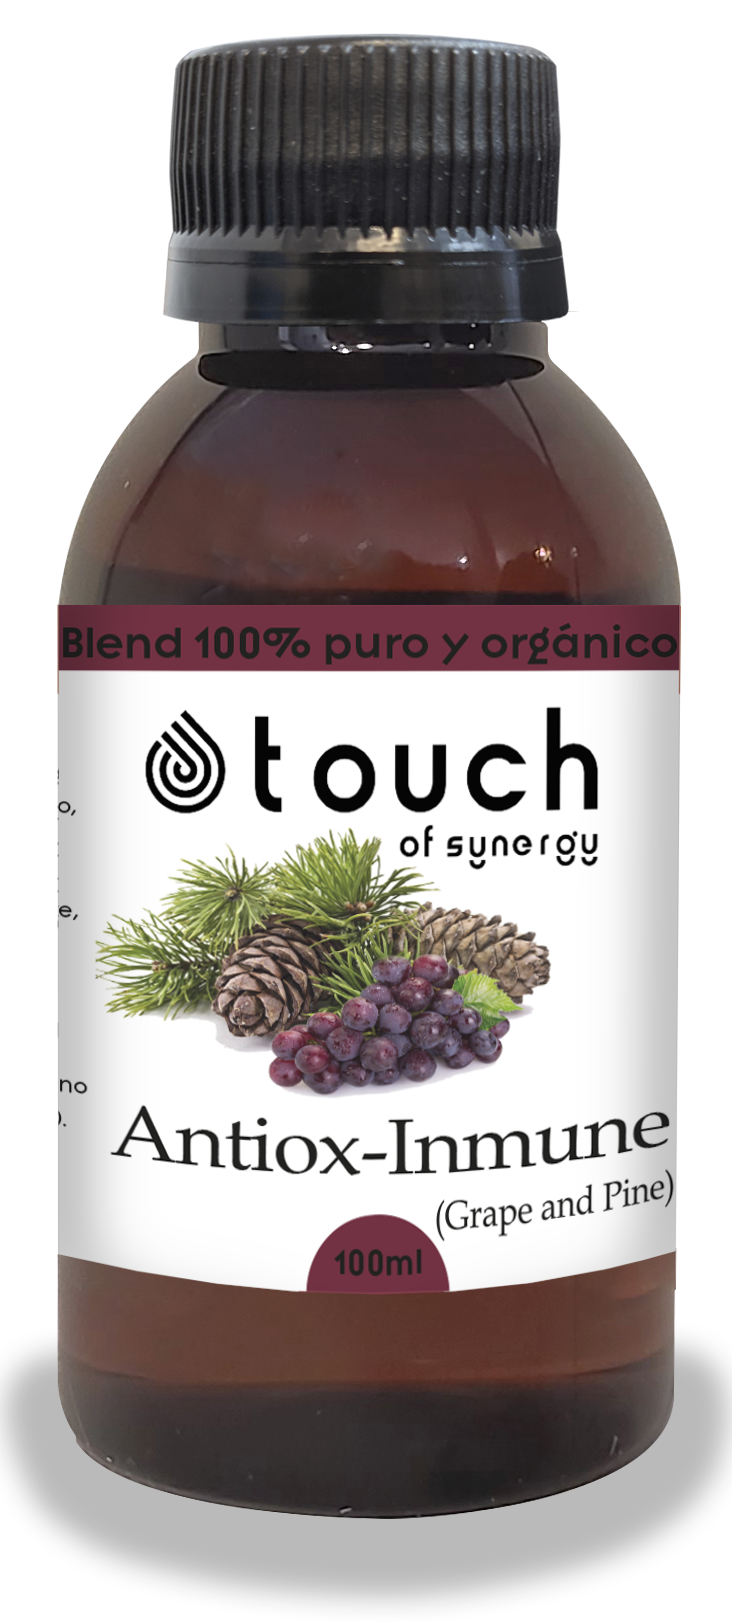 Antiox-Immune (Grape and Pine)